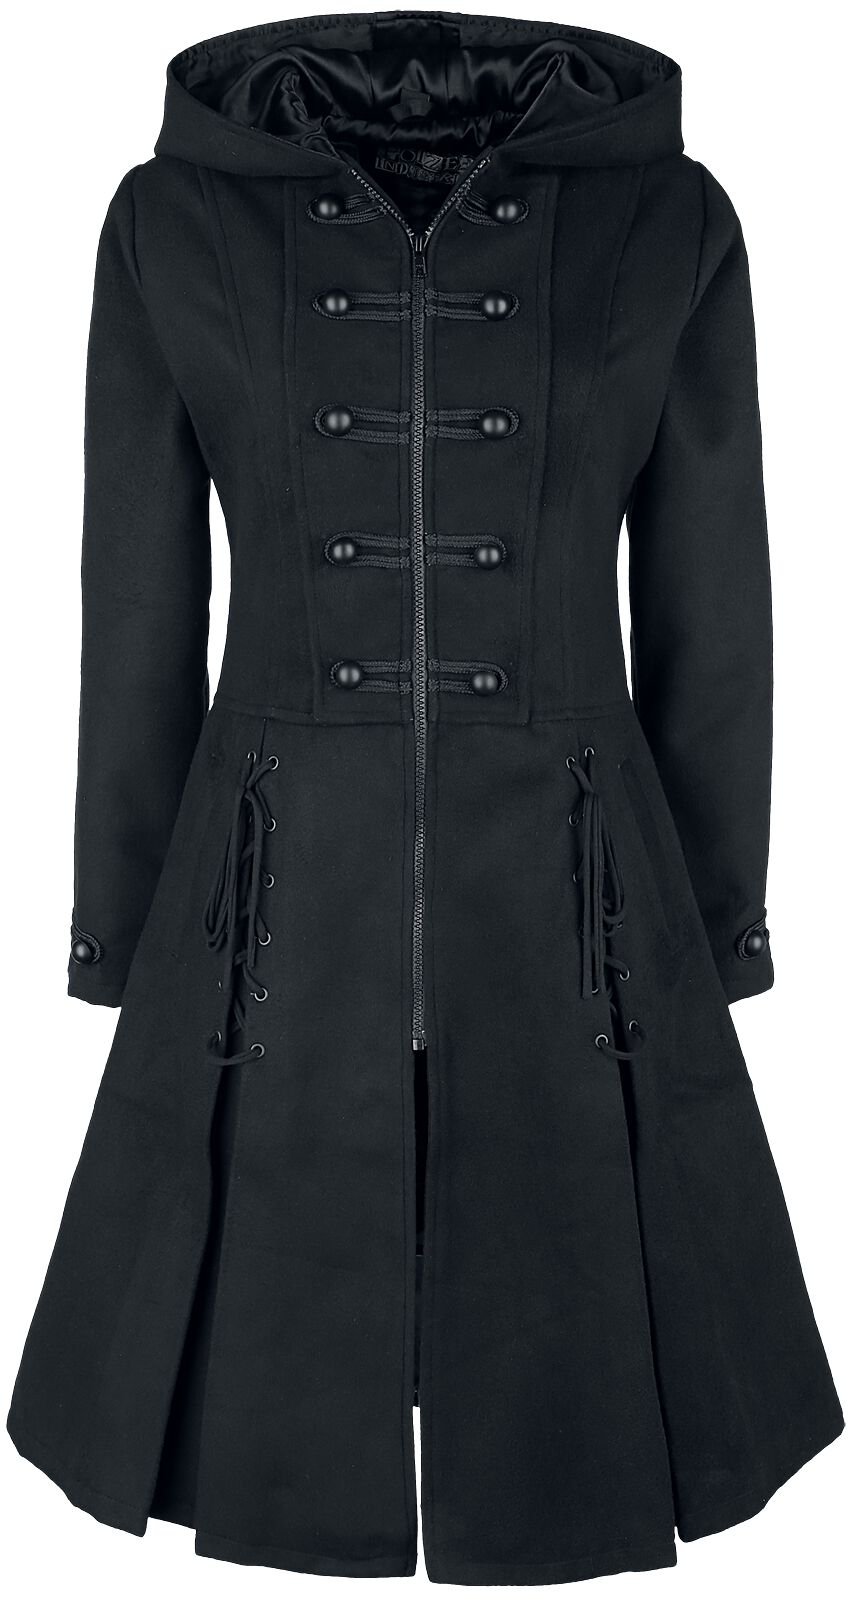 Poizen Industries - Gothic Trenchcoat - Haunt Coat - S bis XXL - für Damen - Größe M - schwarz